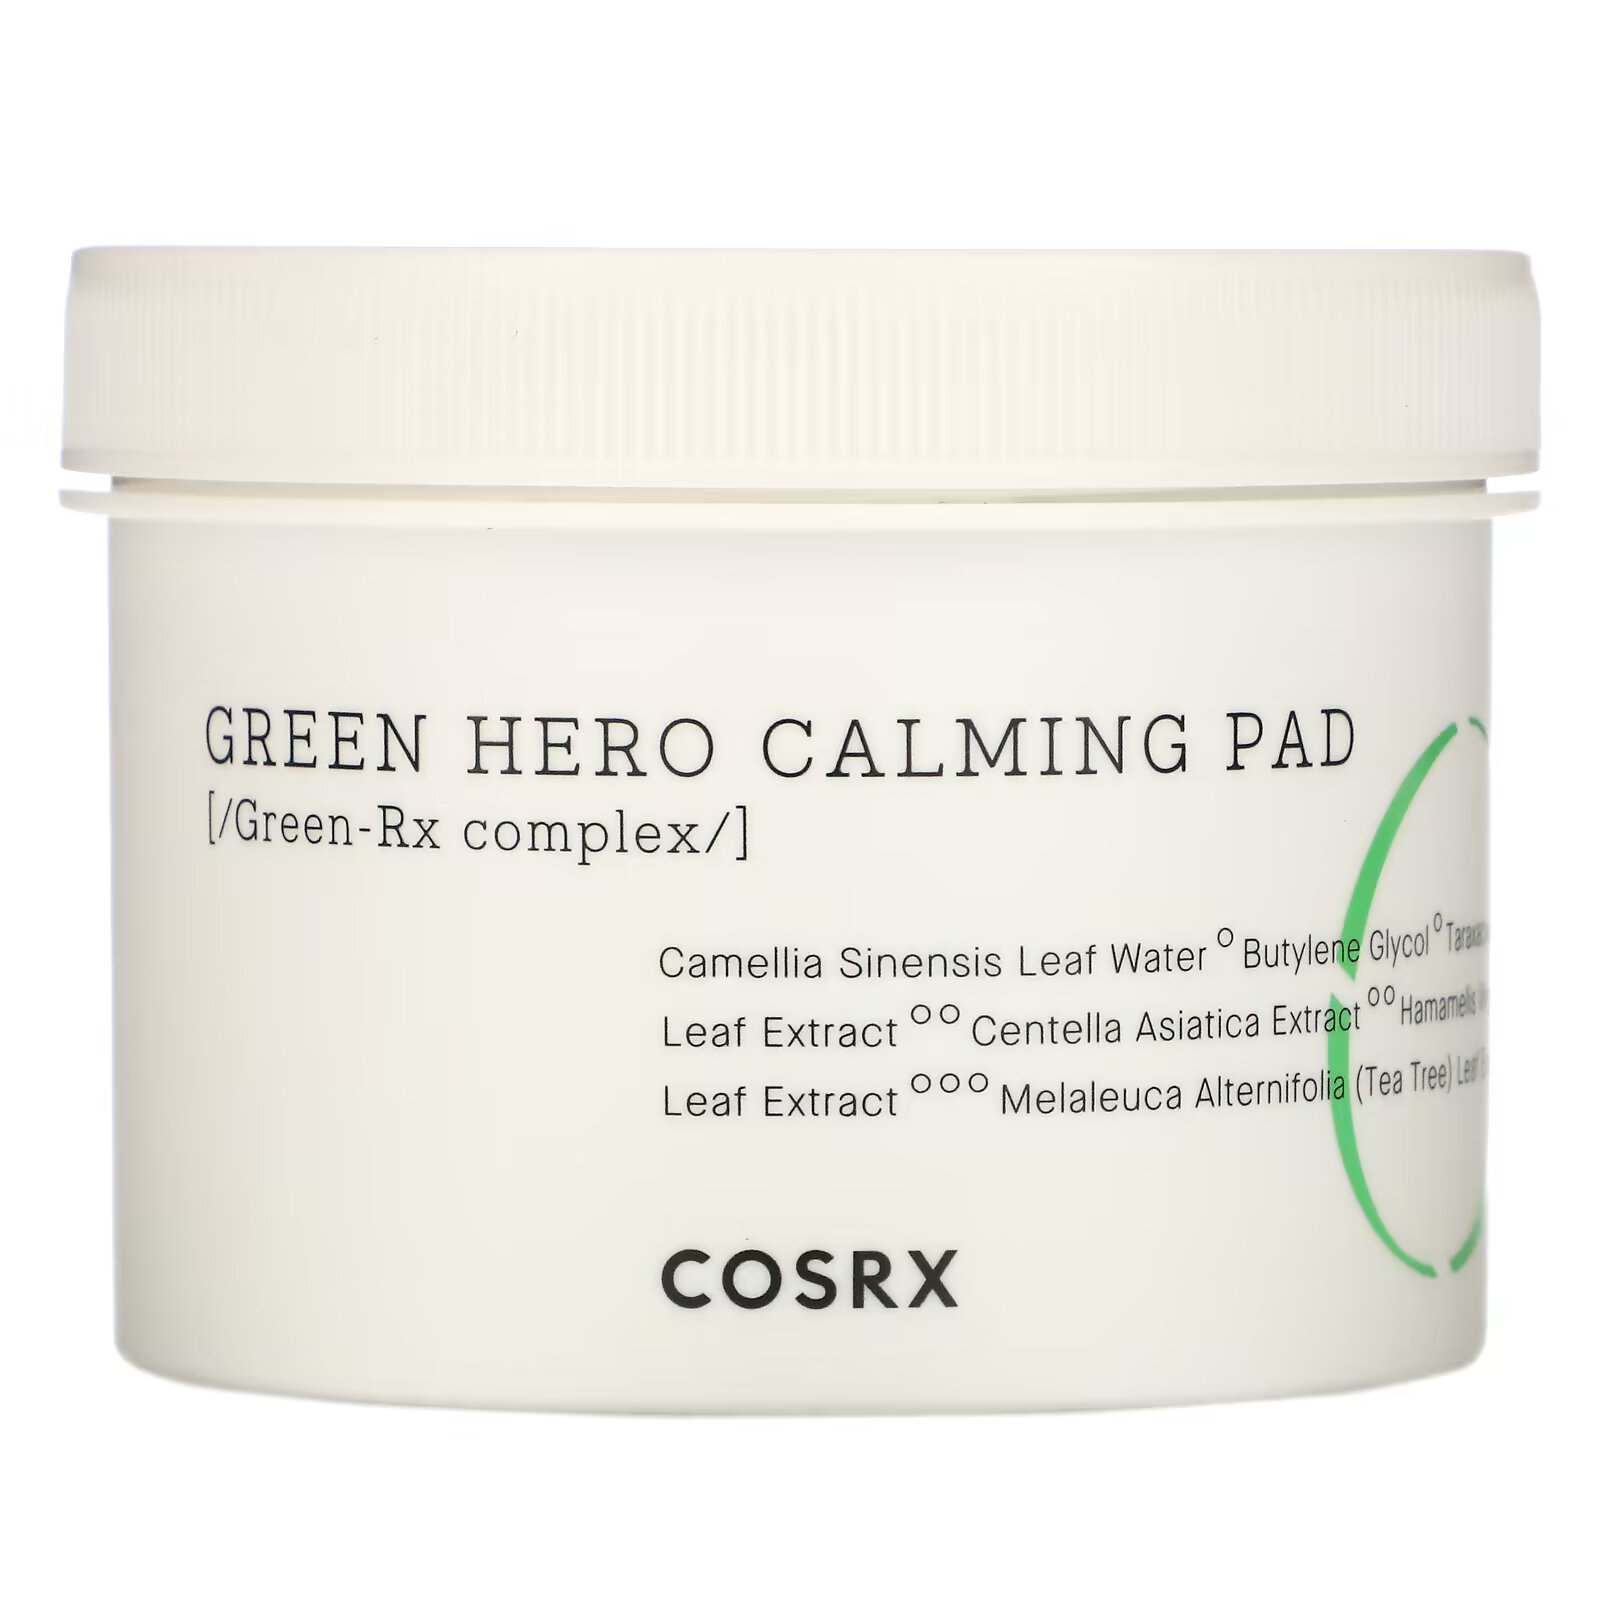 успокаивающие пэды для лица cosrx one step green hero calming pad 70 шт Cosrx, One Step Green Hero Calming Pad, успокаивающие диски, 70 шт., 135 мл (4,56 жидк. унции)